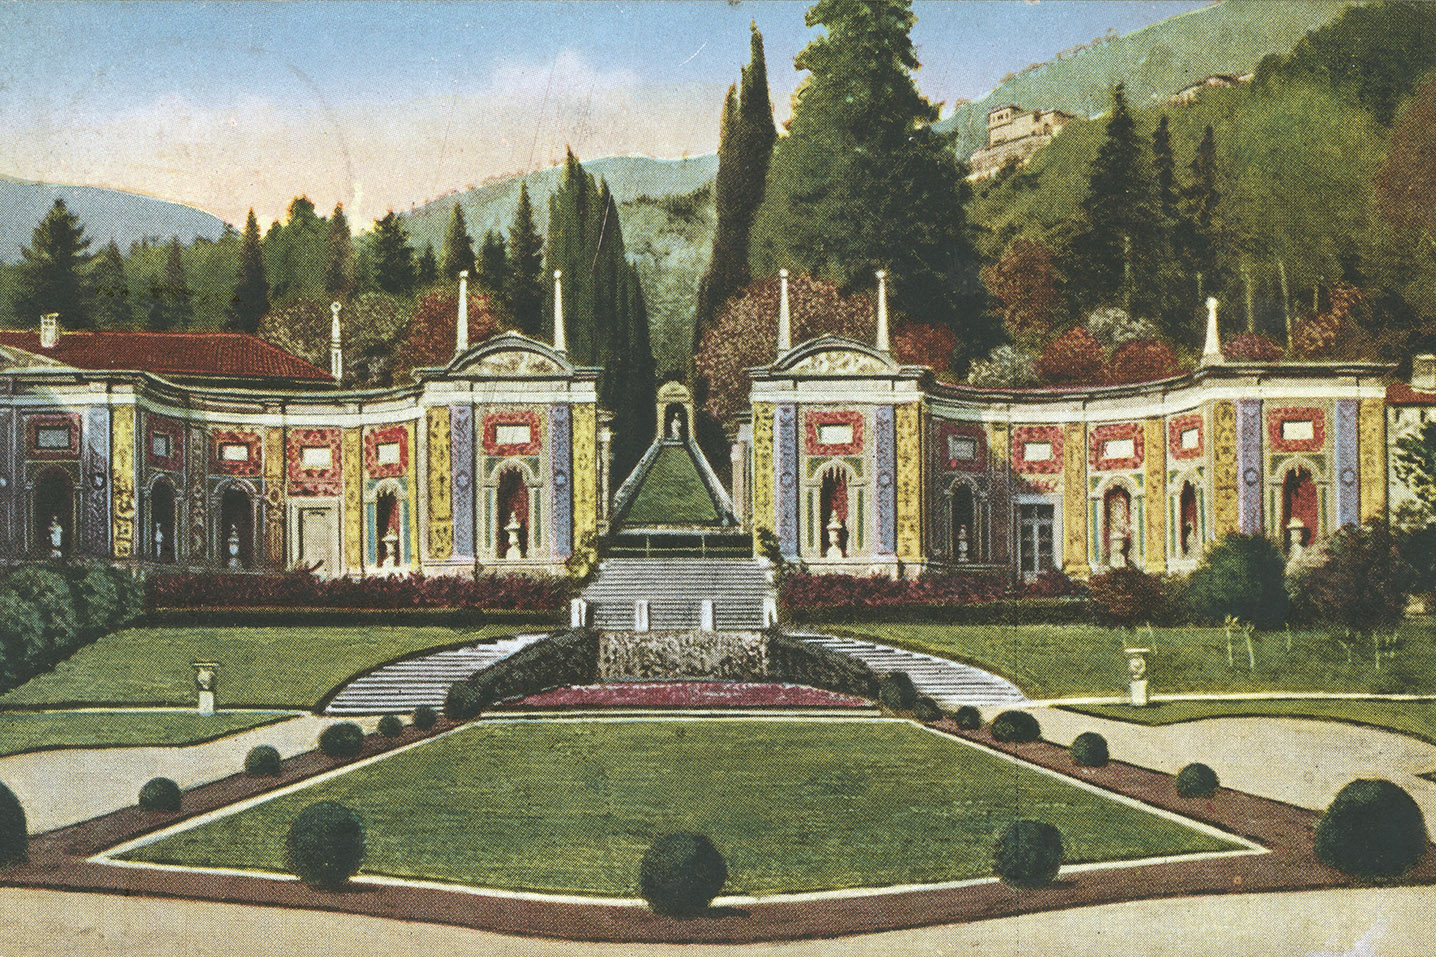 Transplanting the Renaissance: Italian Villa Gardens in America, 1900